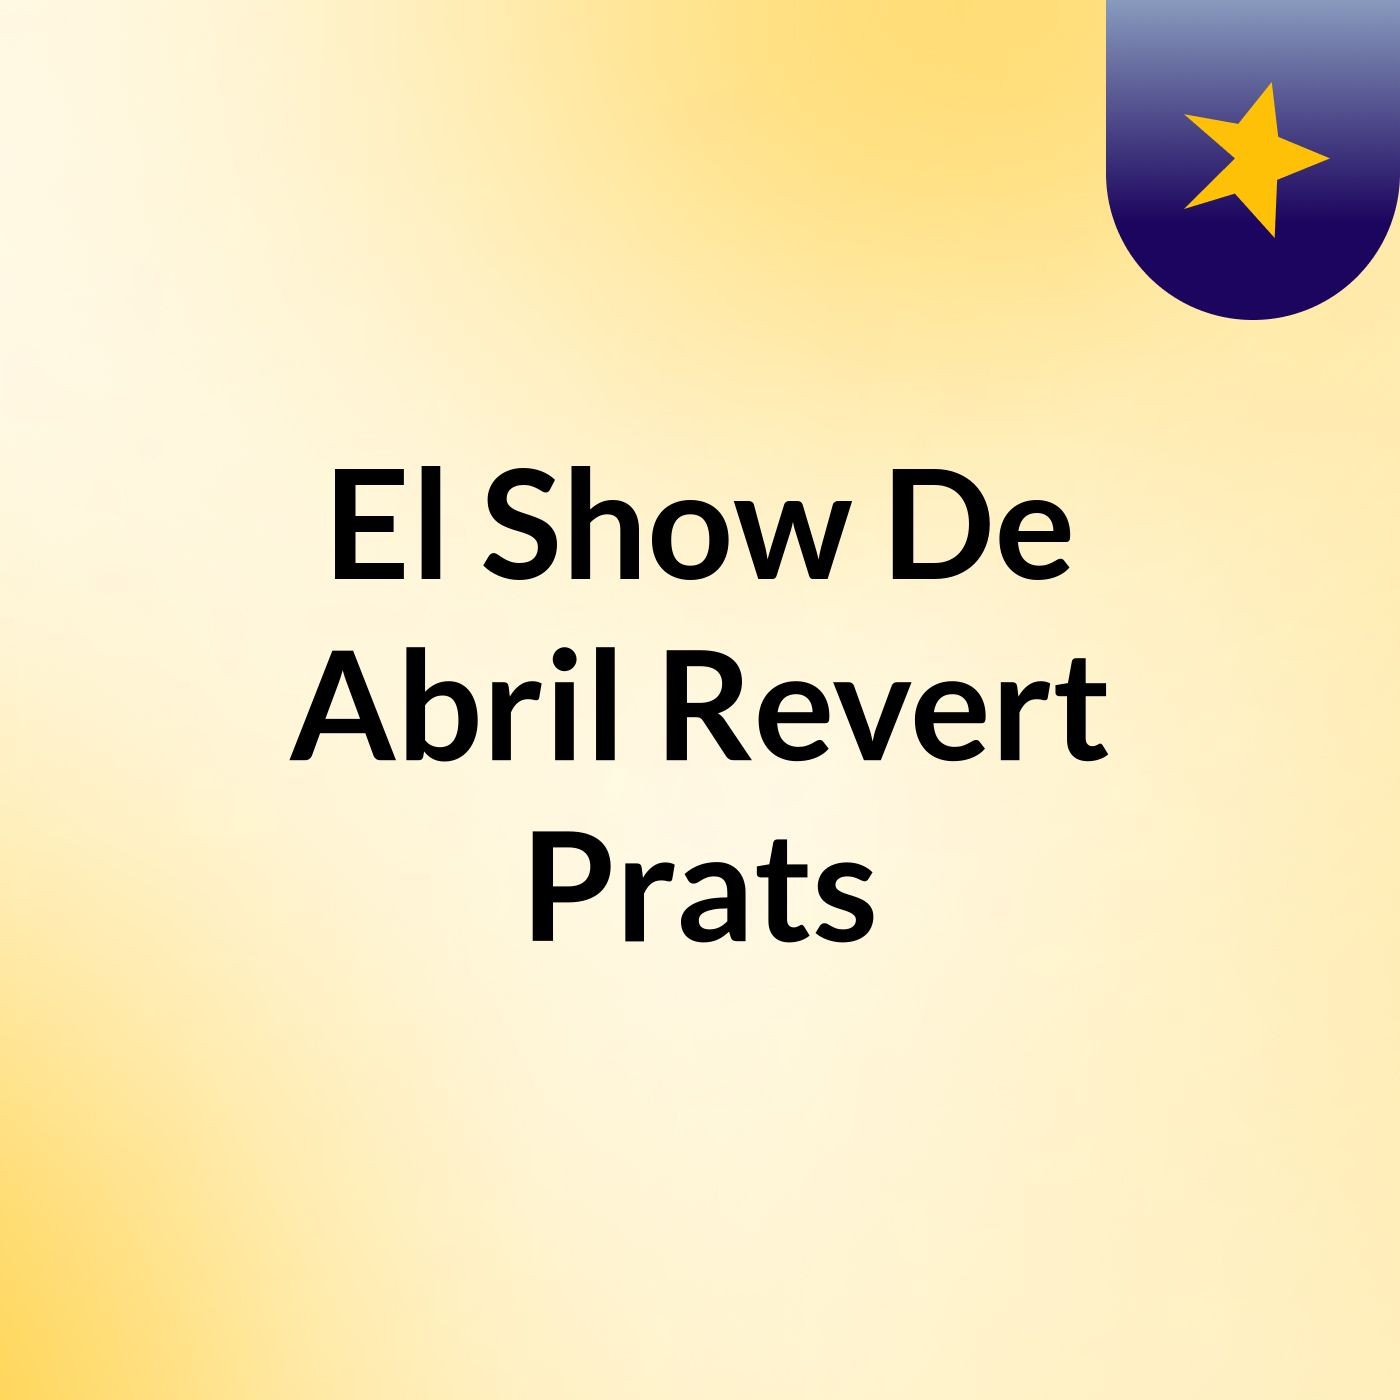 El Show De Abril Revert Prats